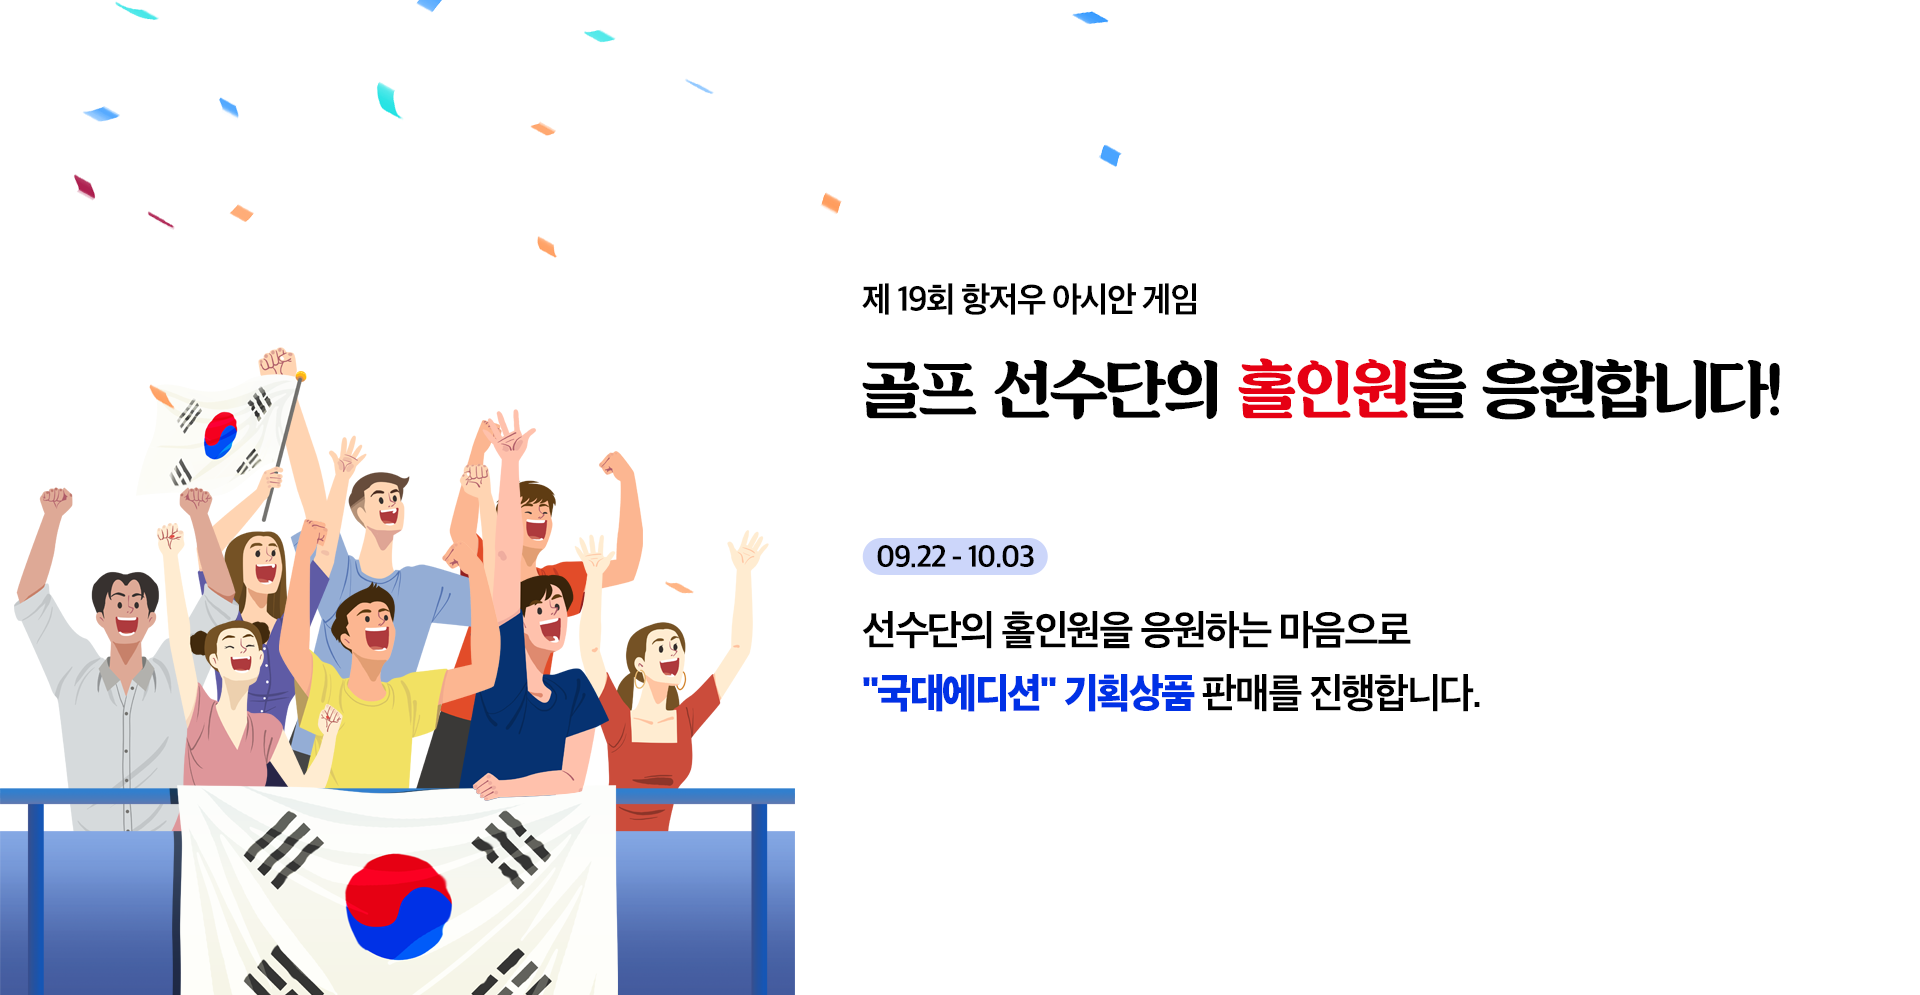 대한민국 골프 선수단을 홀인원을 응원합니다!